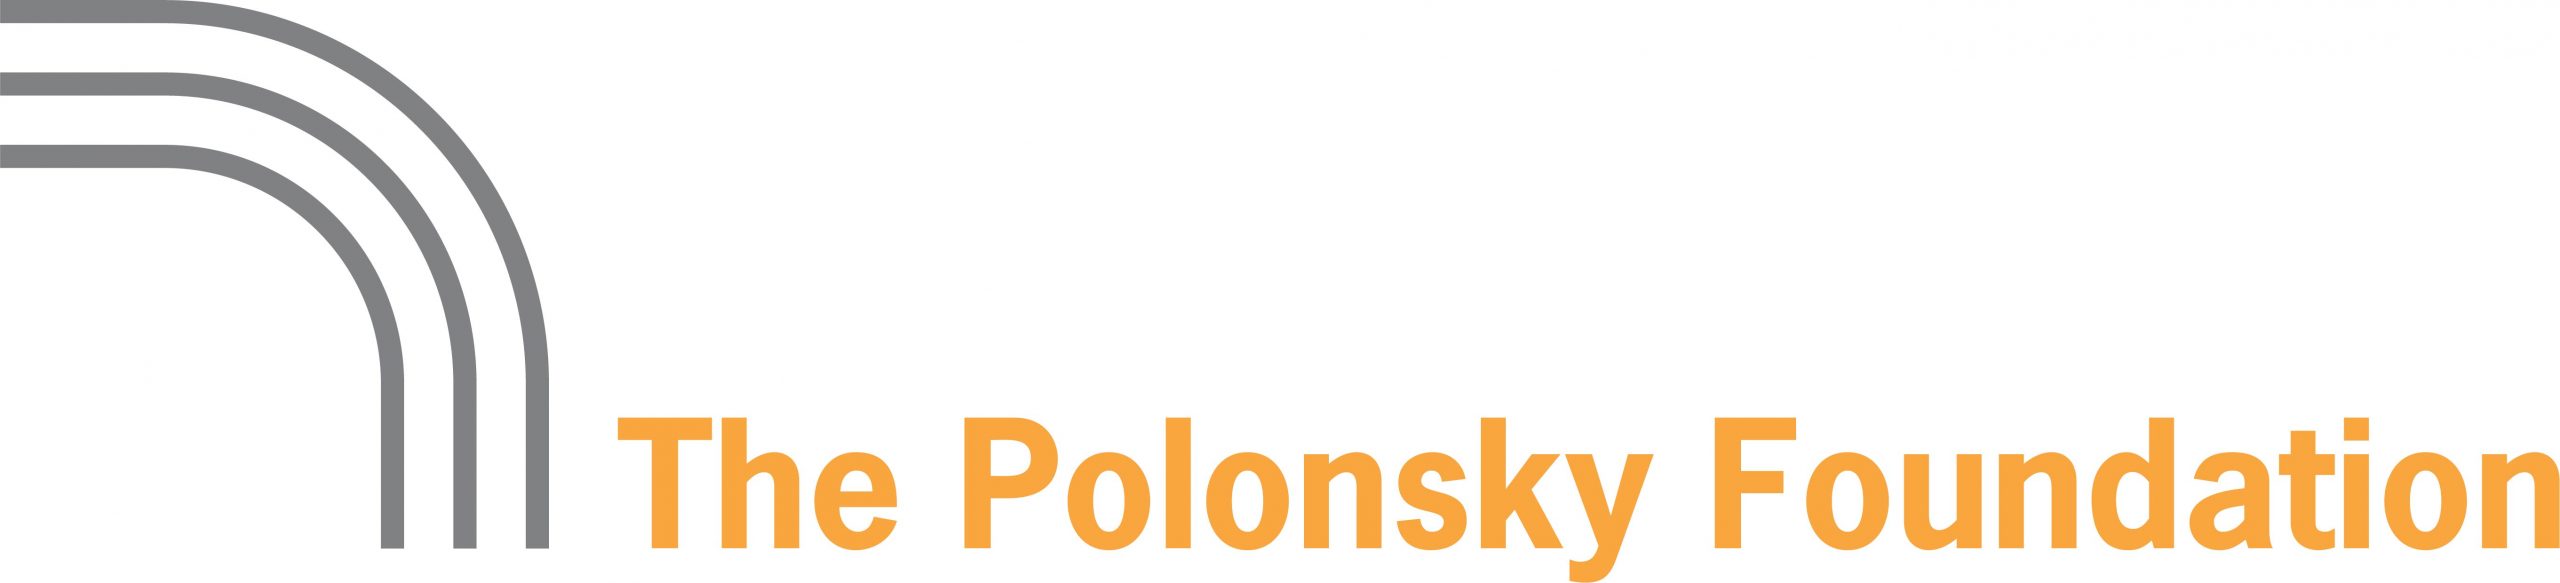 קרן פולונסקי לוגו